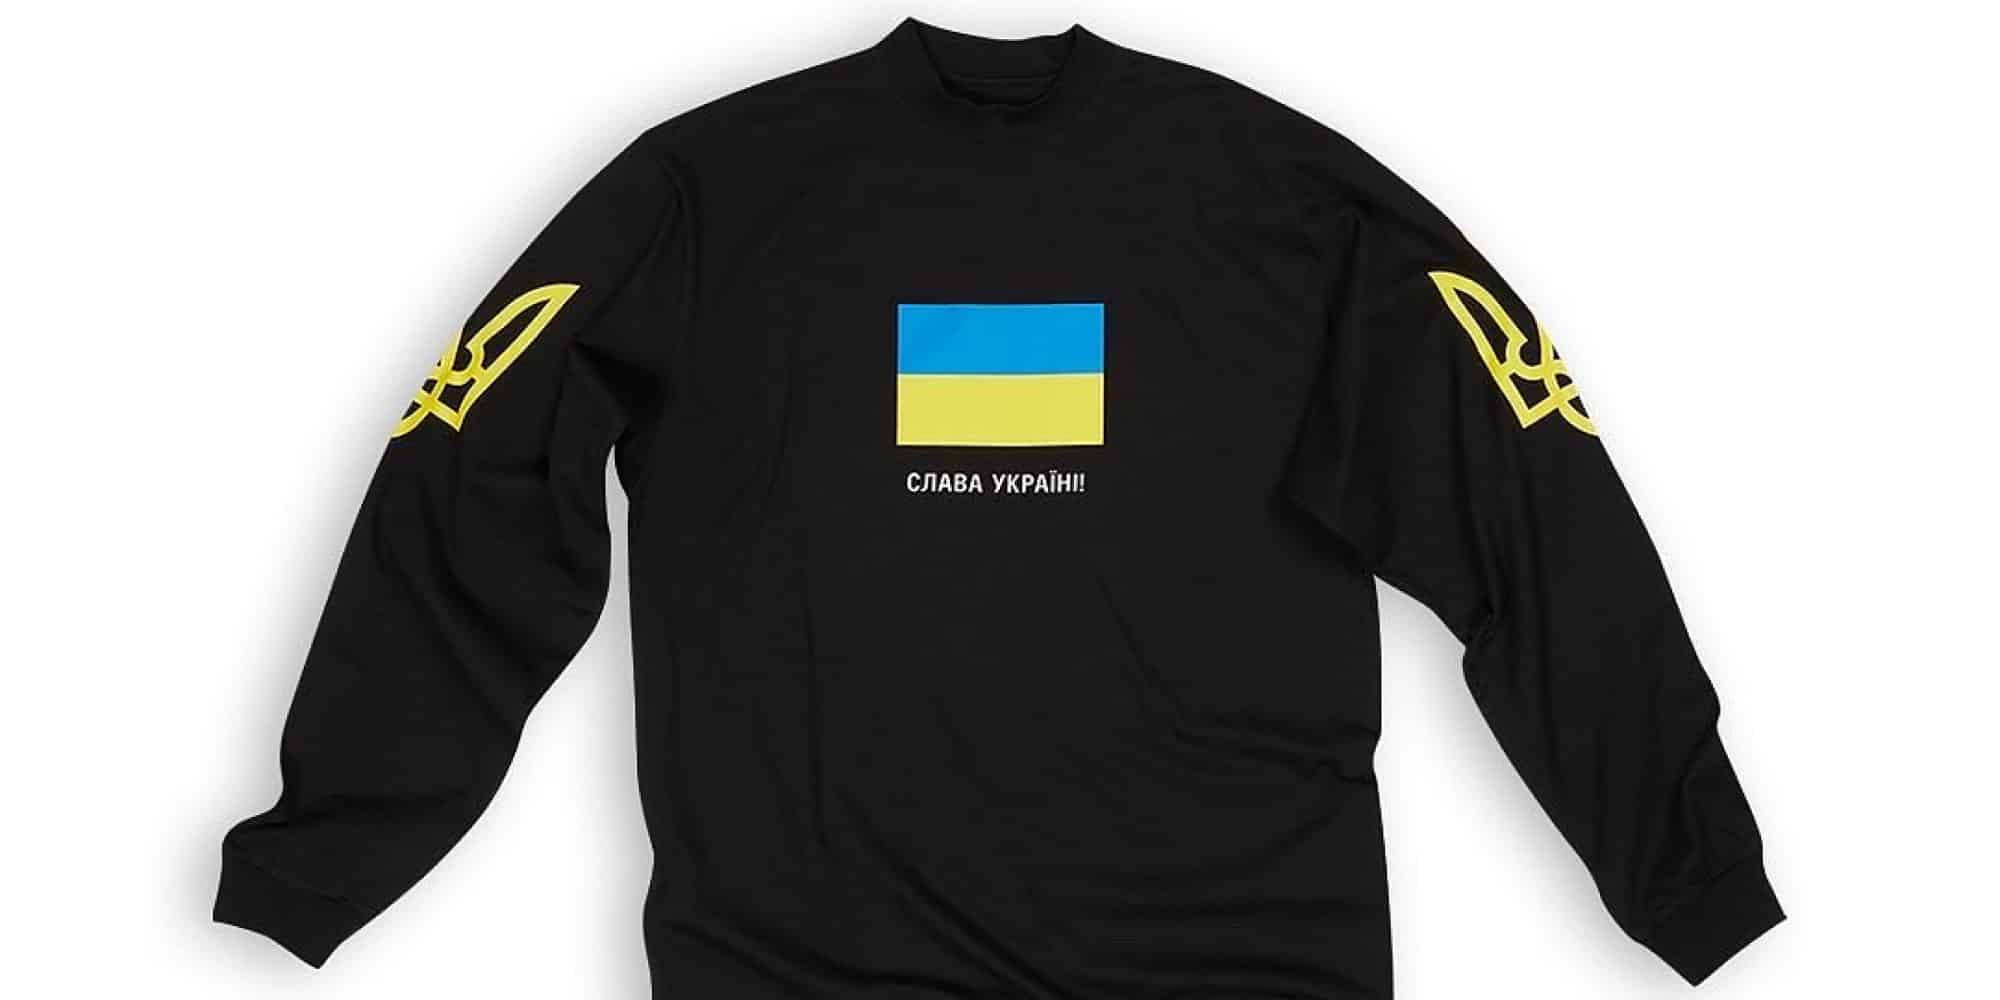 Ο οίκος Balenciaga σχεδίασε T-shirt για να συγκεντρώσει χρήματα για την Ουκρανία